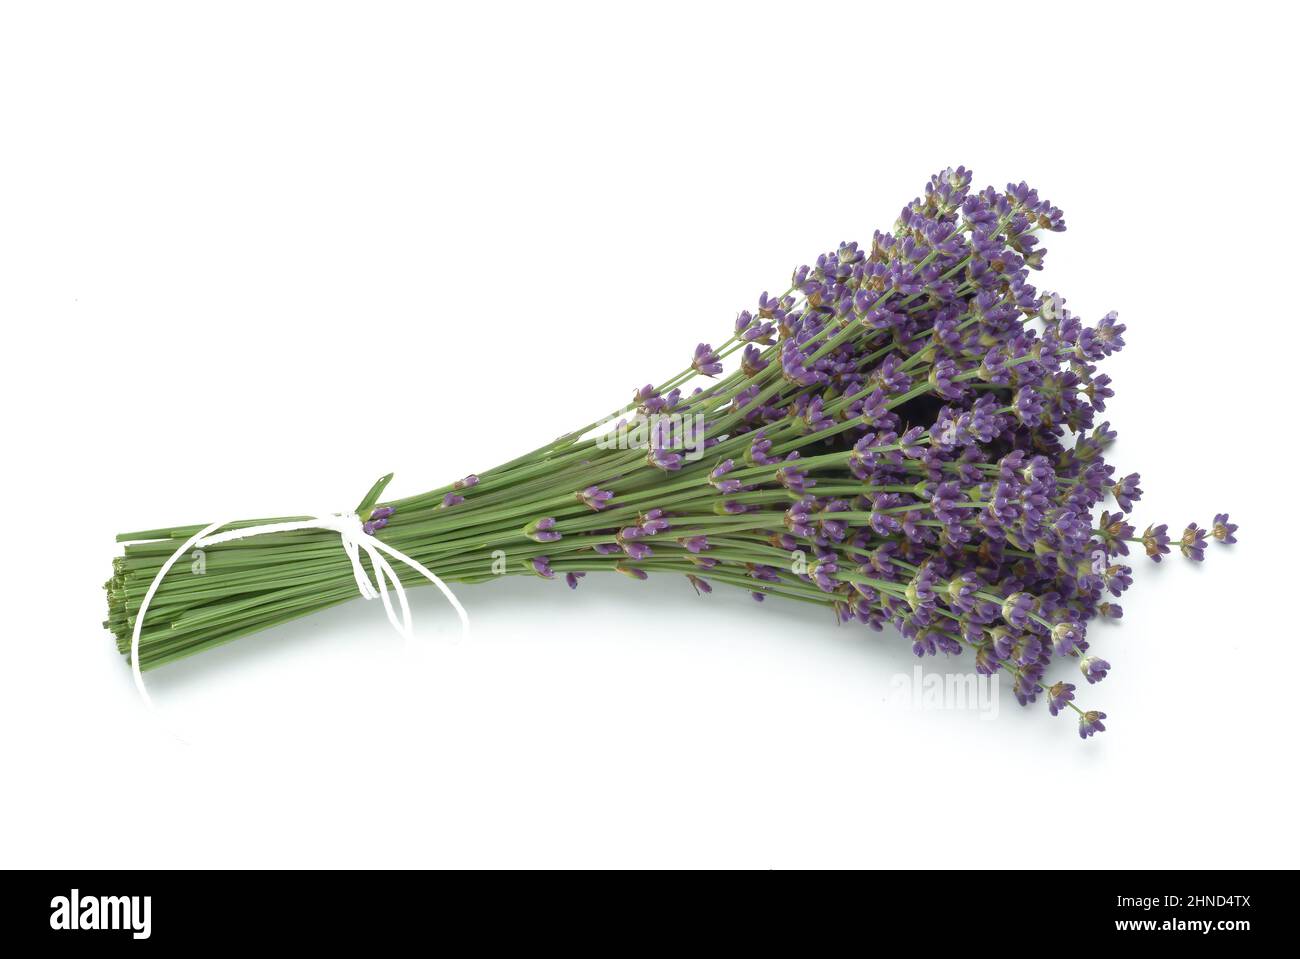 Echte Lavendel oder Schmalblättrige Lavendel, Lavandula angustifolia, Lavandula officinalis, alte Heilpflanze, die bei Unruhezuständen, Einschlafprobl Stock Photo